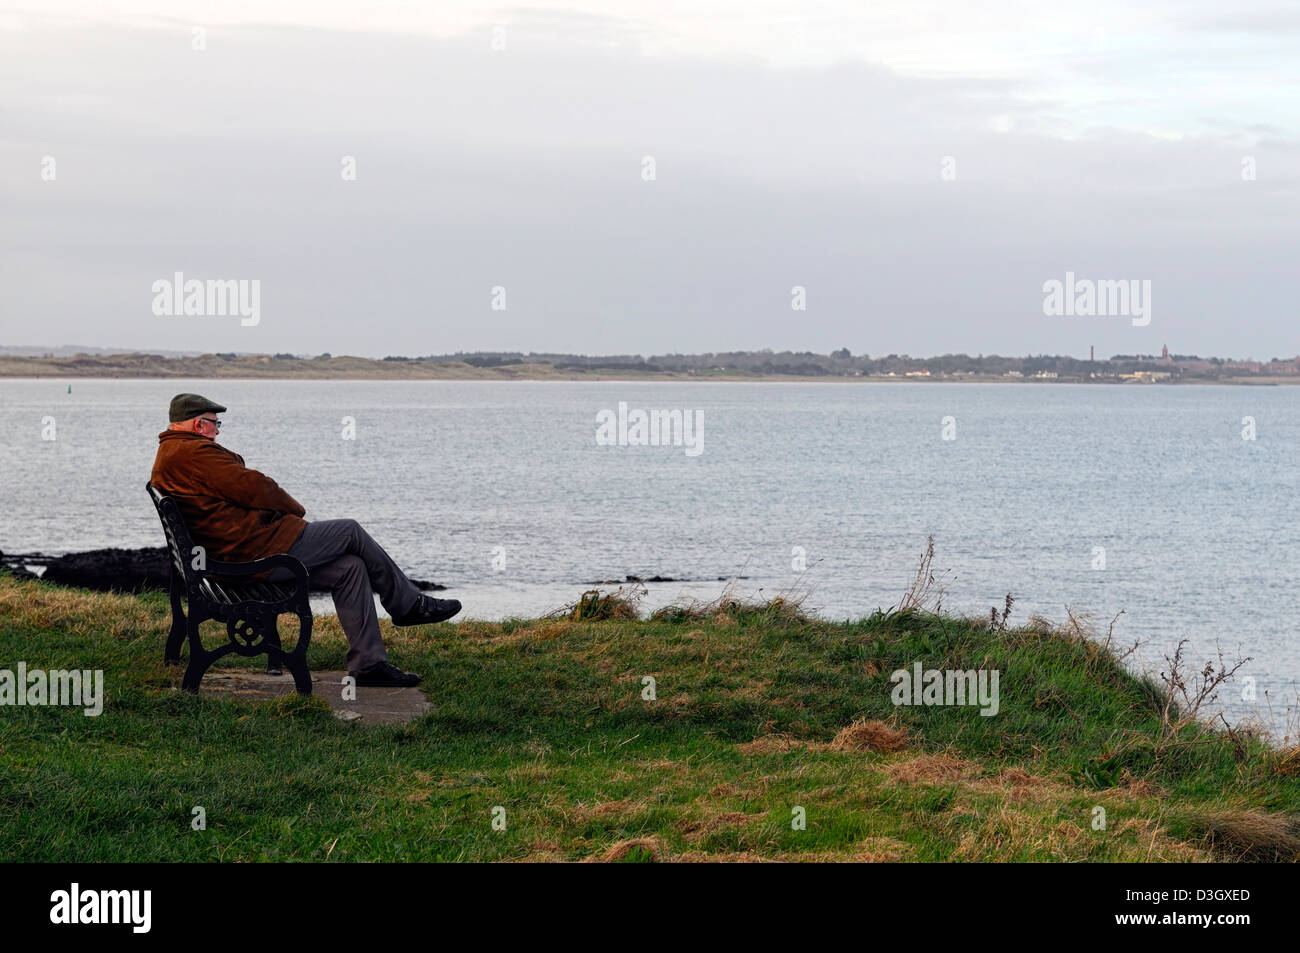 allein auf eigenen Sit Bank Blick auf Meer Ozean sitzen alte älterer Mann einsamer Single denken betrachten in Erinnerungen schwelgen Abends Sonnenuntergang Winter Stockfoto